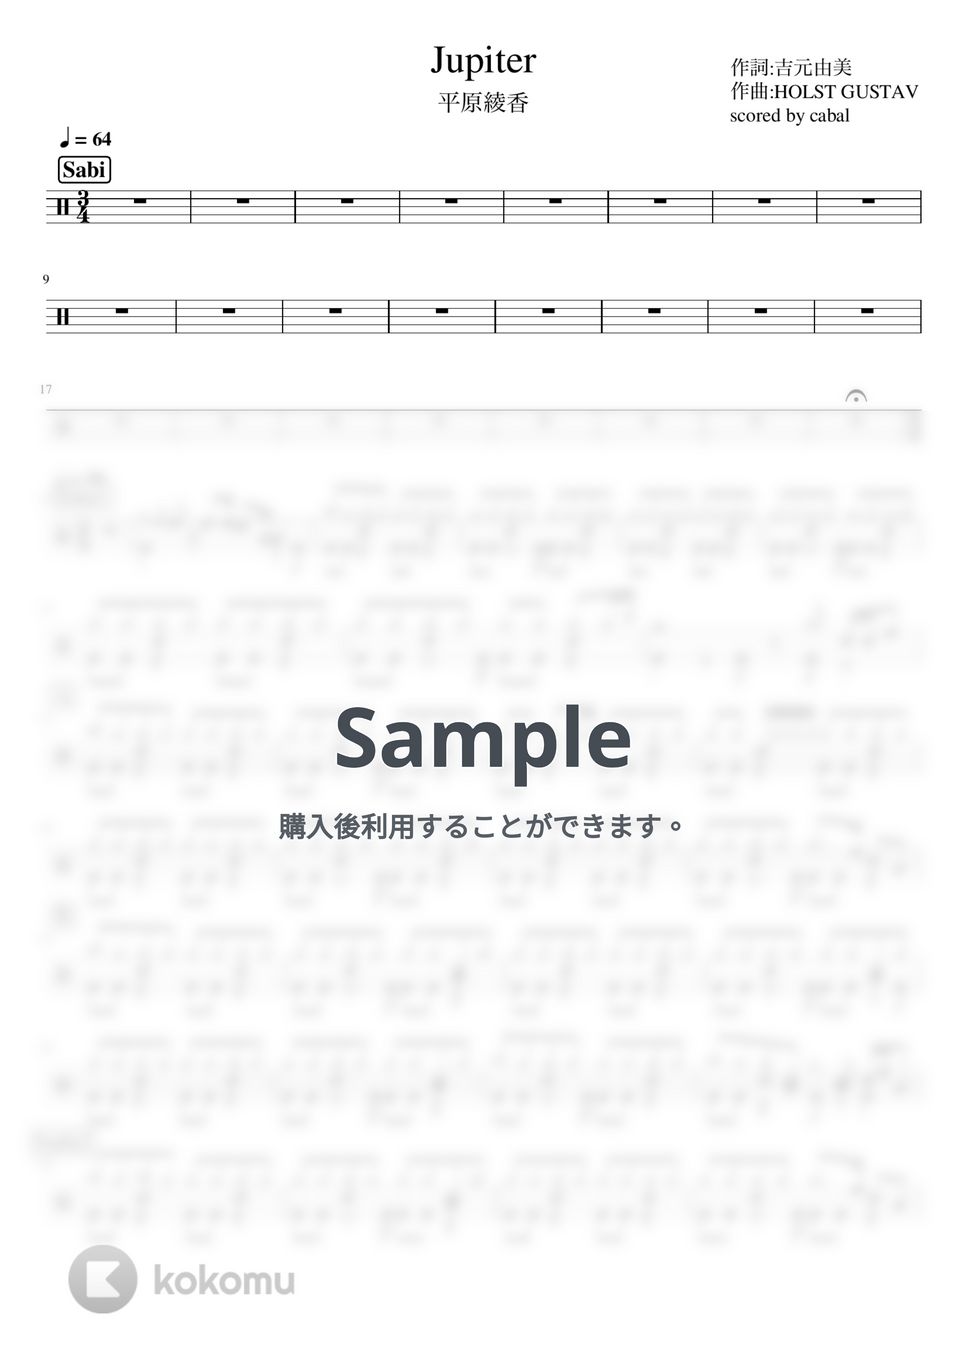 平原綾香 - Jupiter (ドラム譜面) by cabal